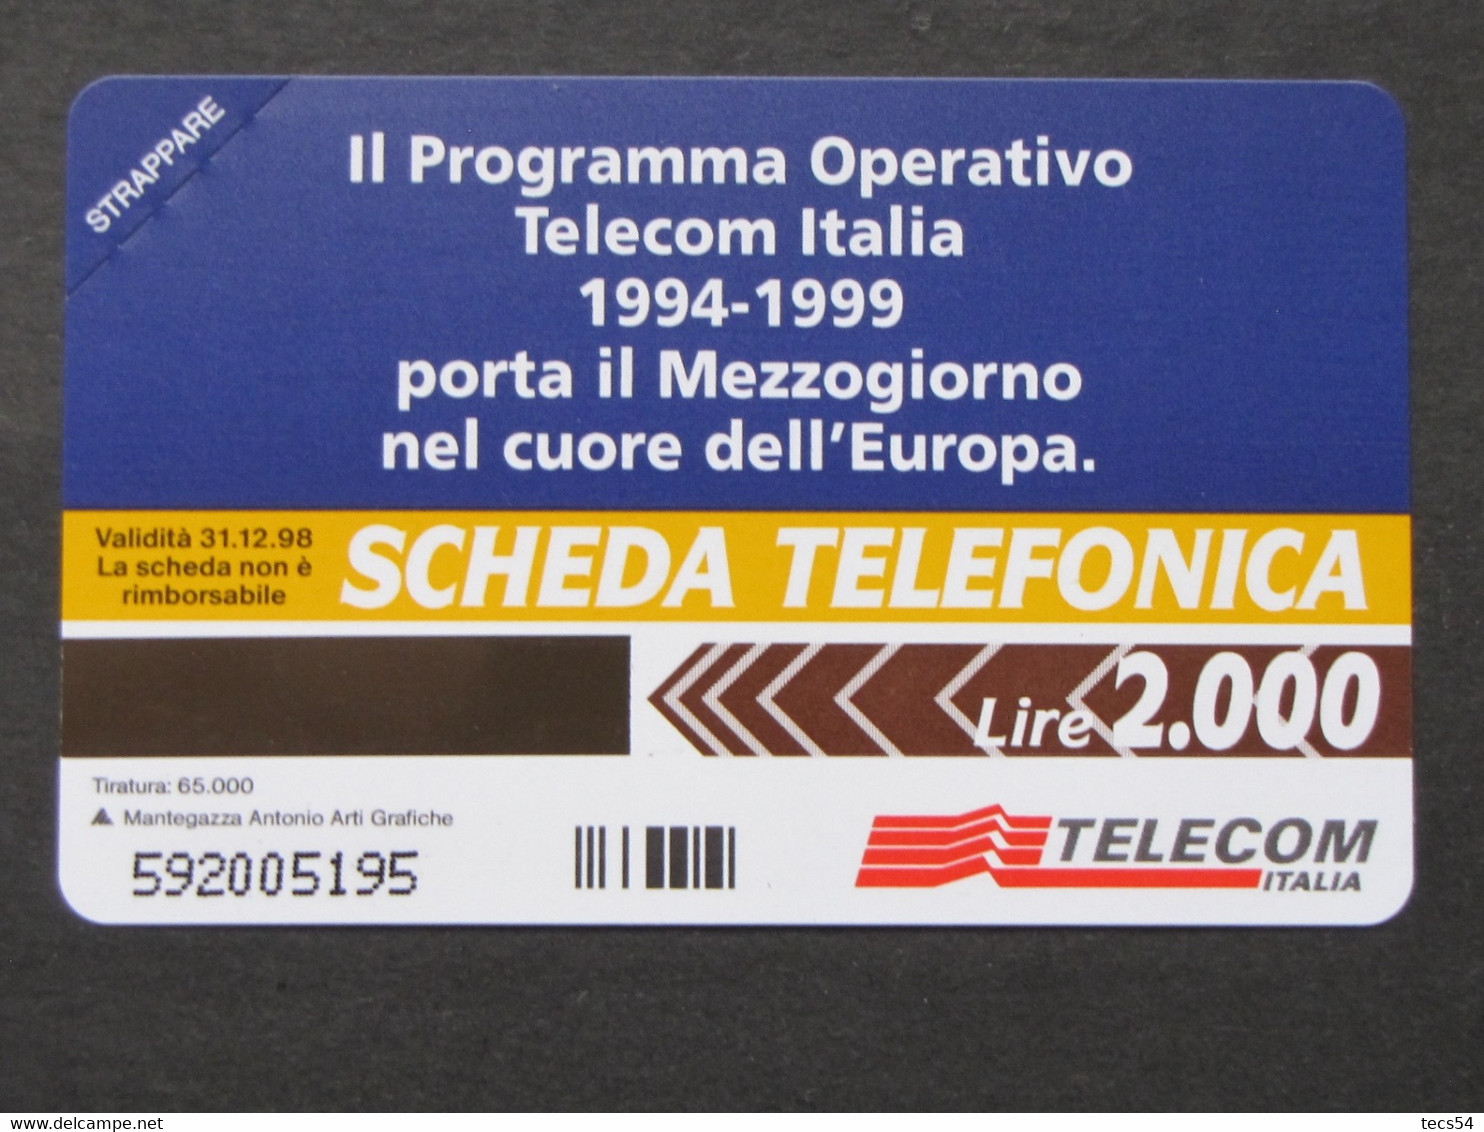 ITALIA TELECOM - 3423 C&C 330 GOLDEN - PRIVATE PUBBLICHE - FESR FONDO EUROPEO SVILUPPO REGIONALE  - NUOVA - Private-Omaggi